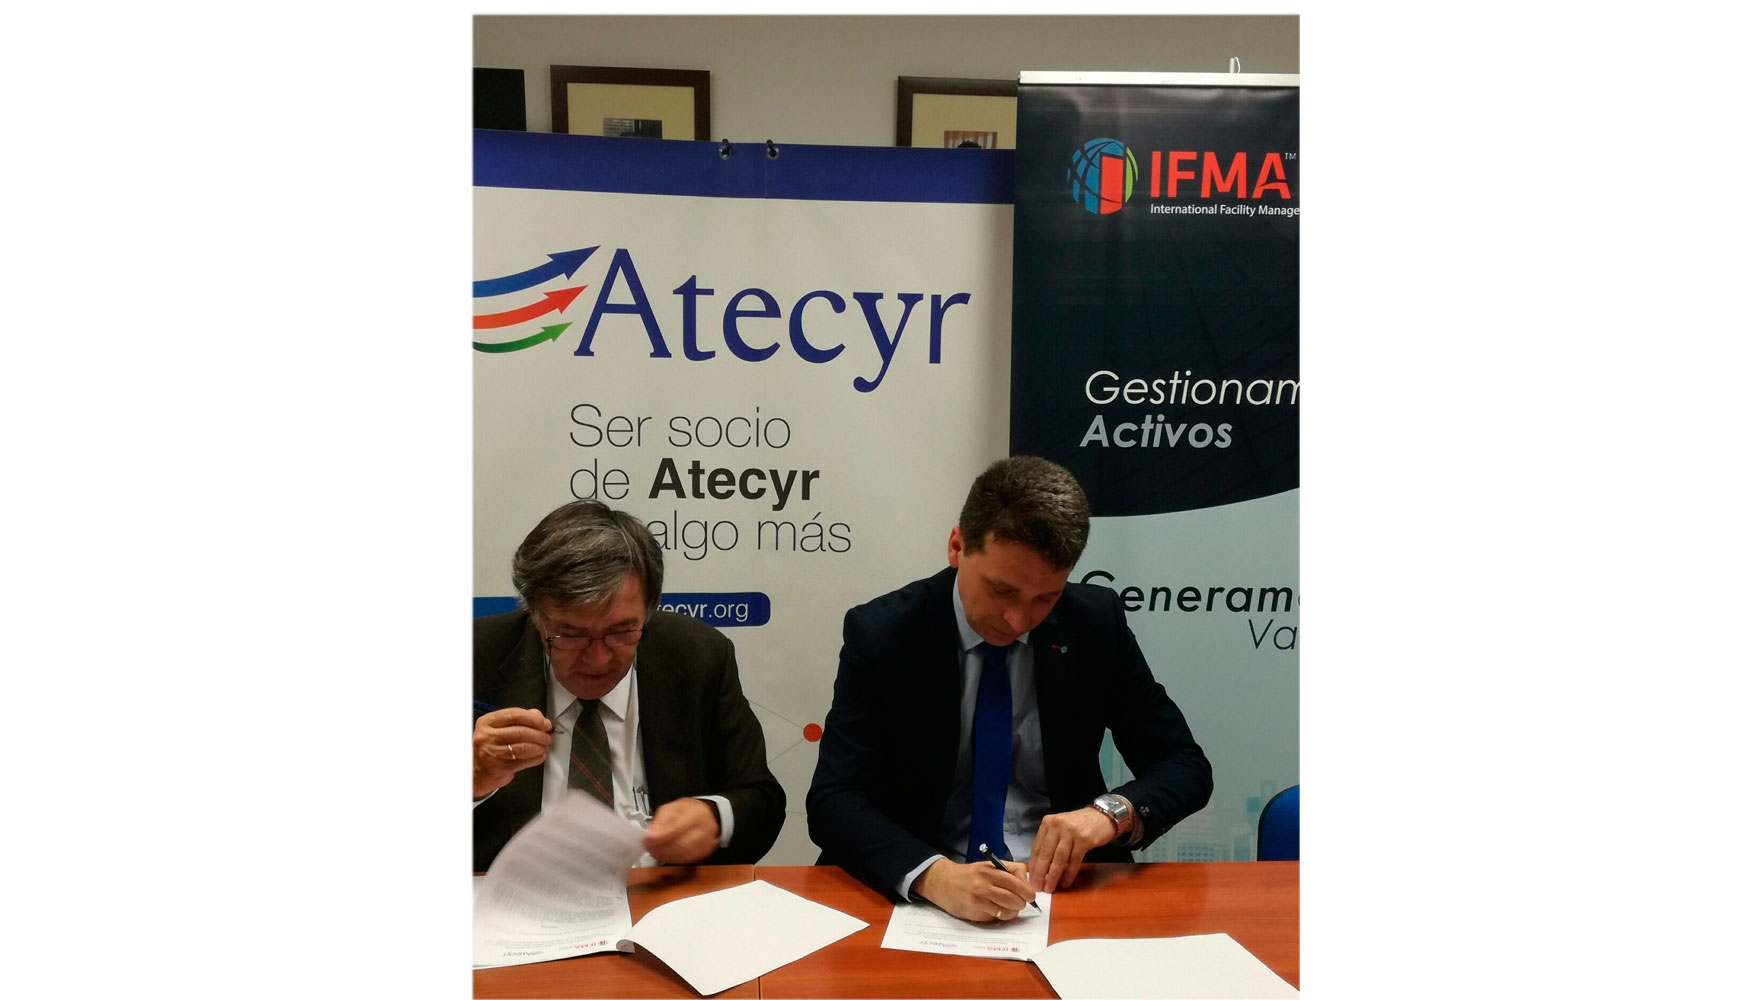 Francisco Garca Ahumada y Miguel ngel Llopis Gmez presidentes de IFMA y Atecyr respectivamente, rubricaron el convenio...